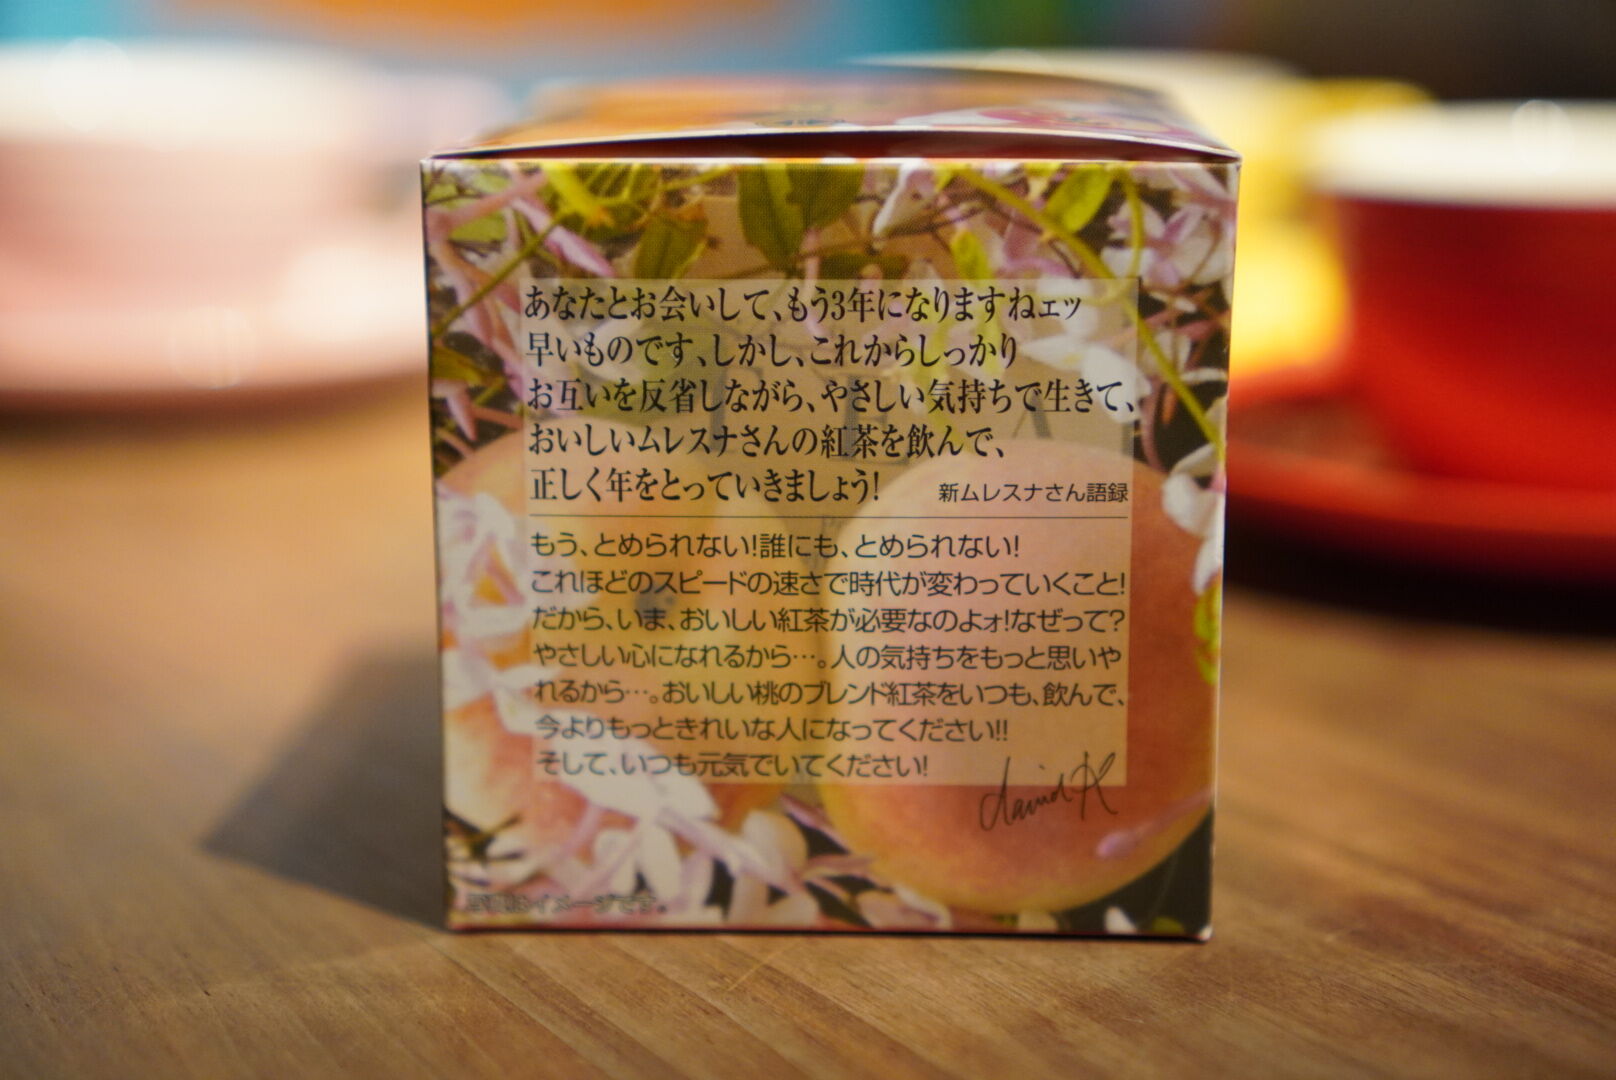 紅茶 ムレスナティー 白桃ジャスミン ジャスミンの香りと白桃のハーモニー